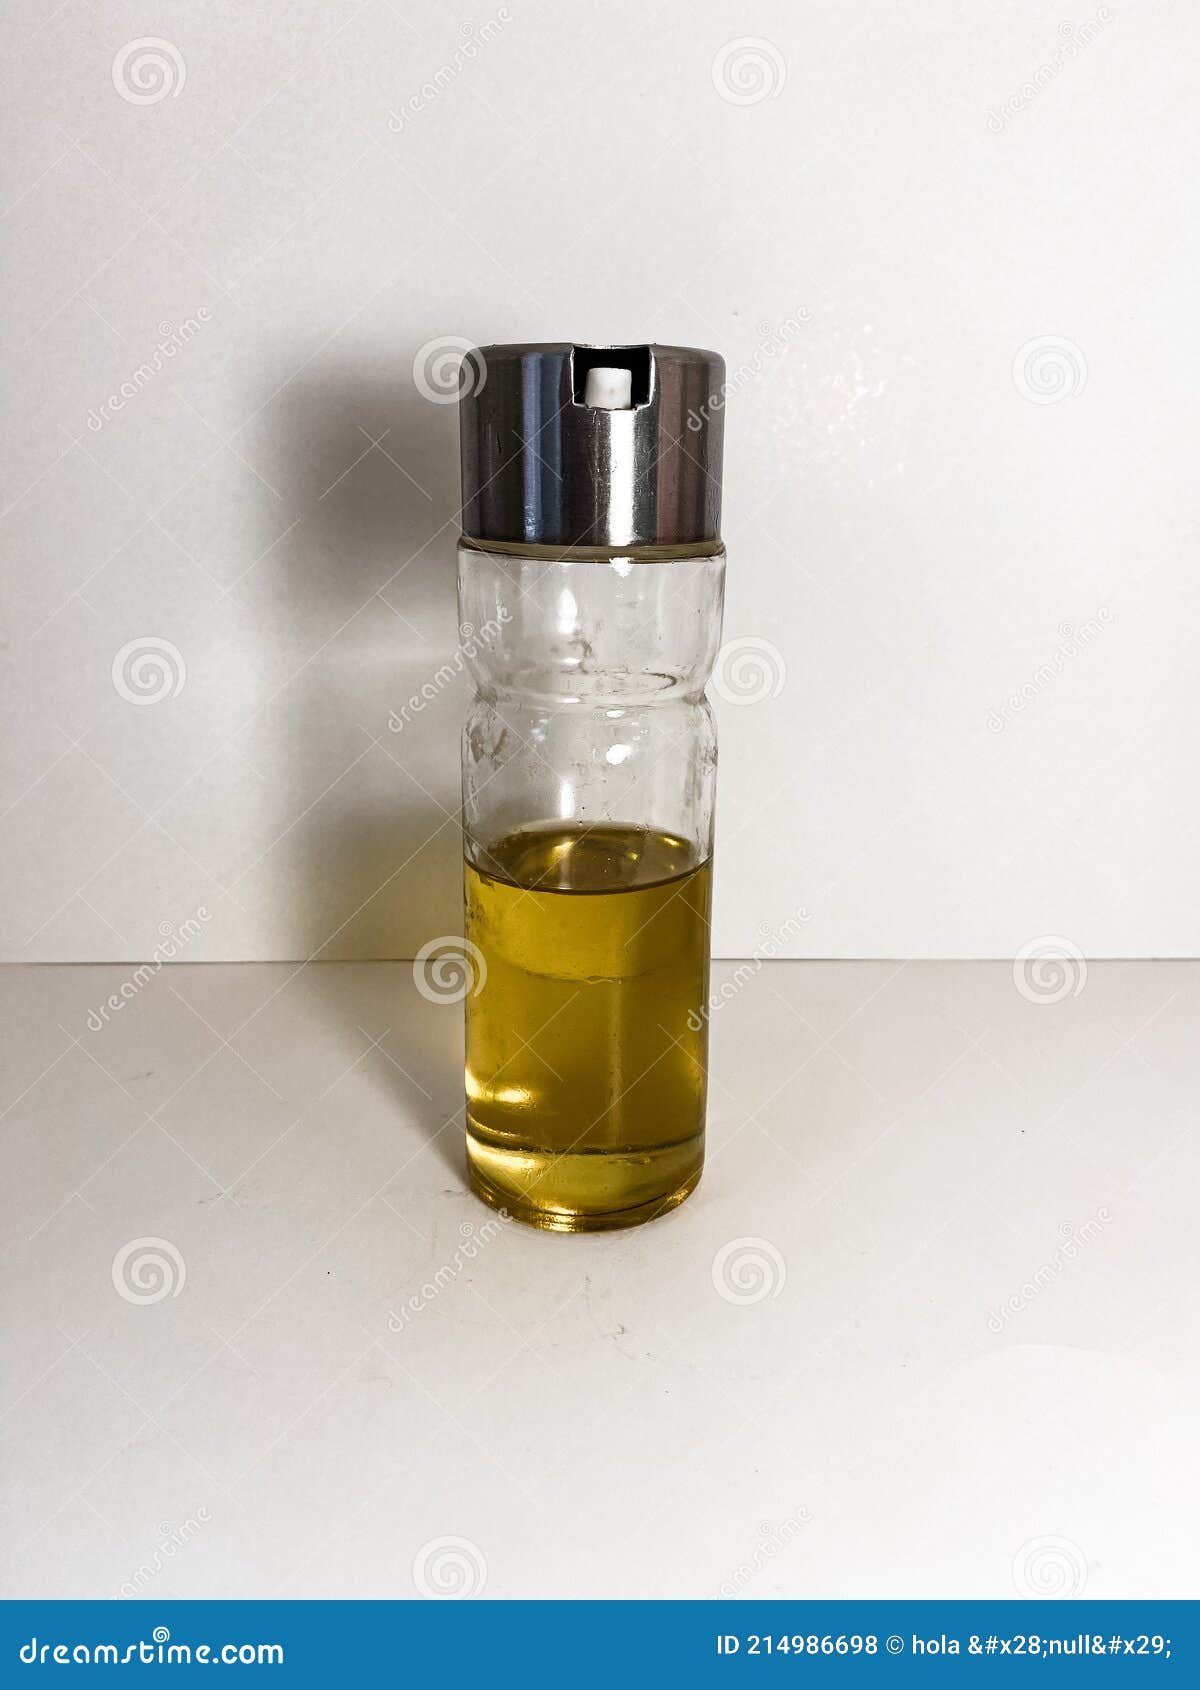 oil pot bote de aceite